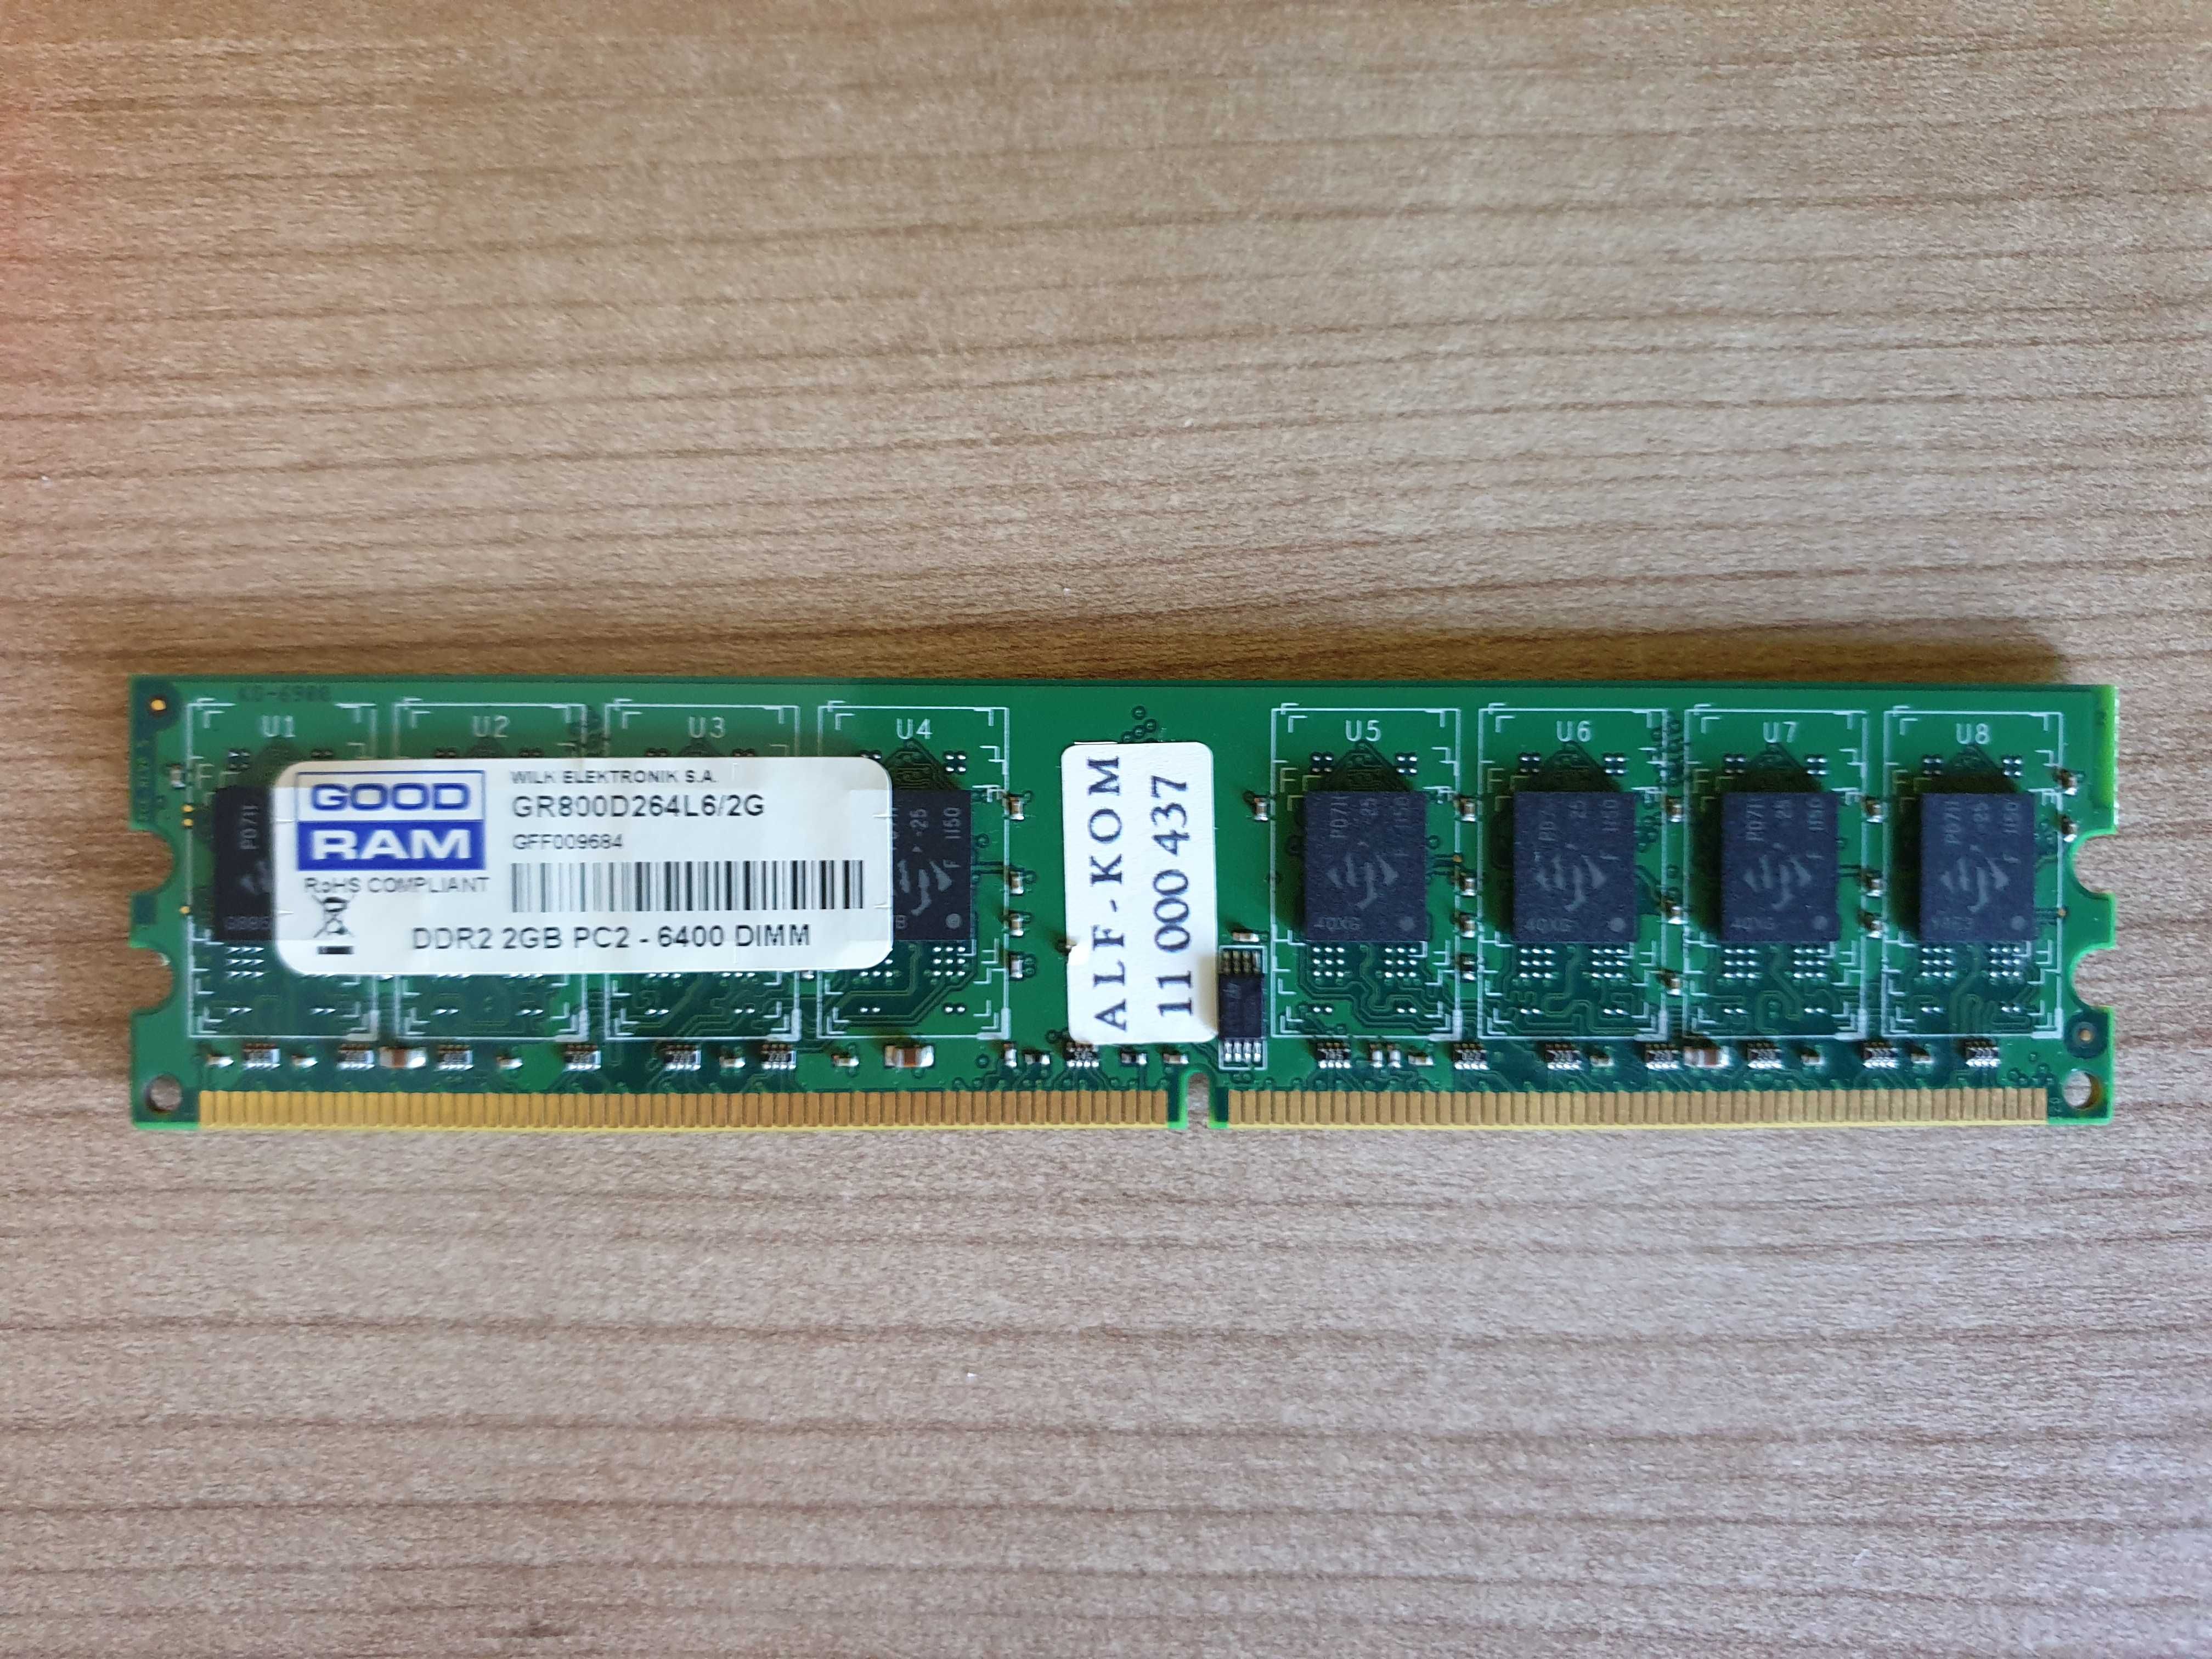 Pamięć RAM DDR2 Goodram PC2-6400 2 GB GR800D264L6